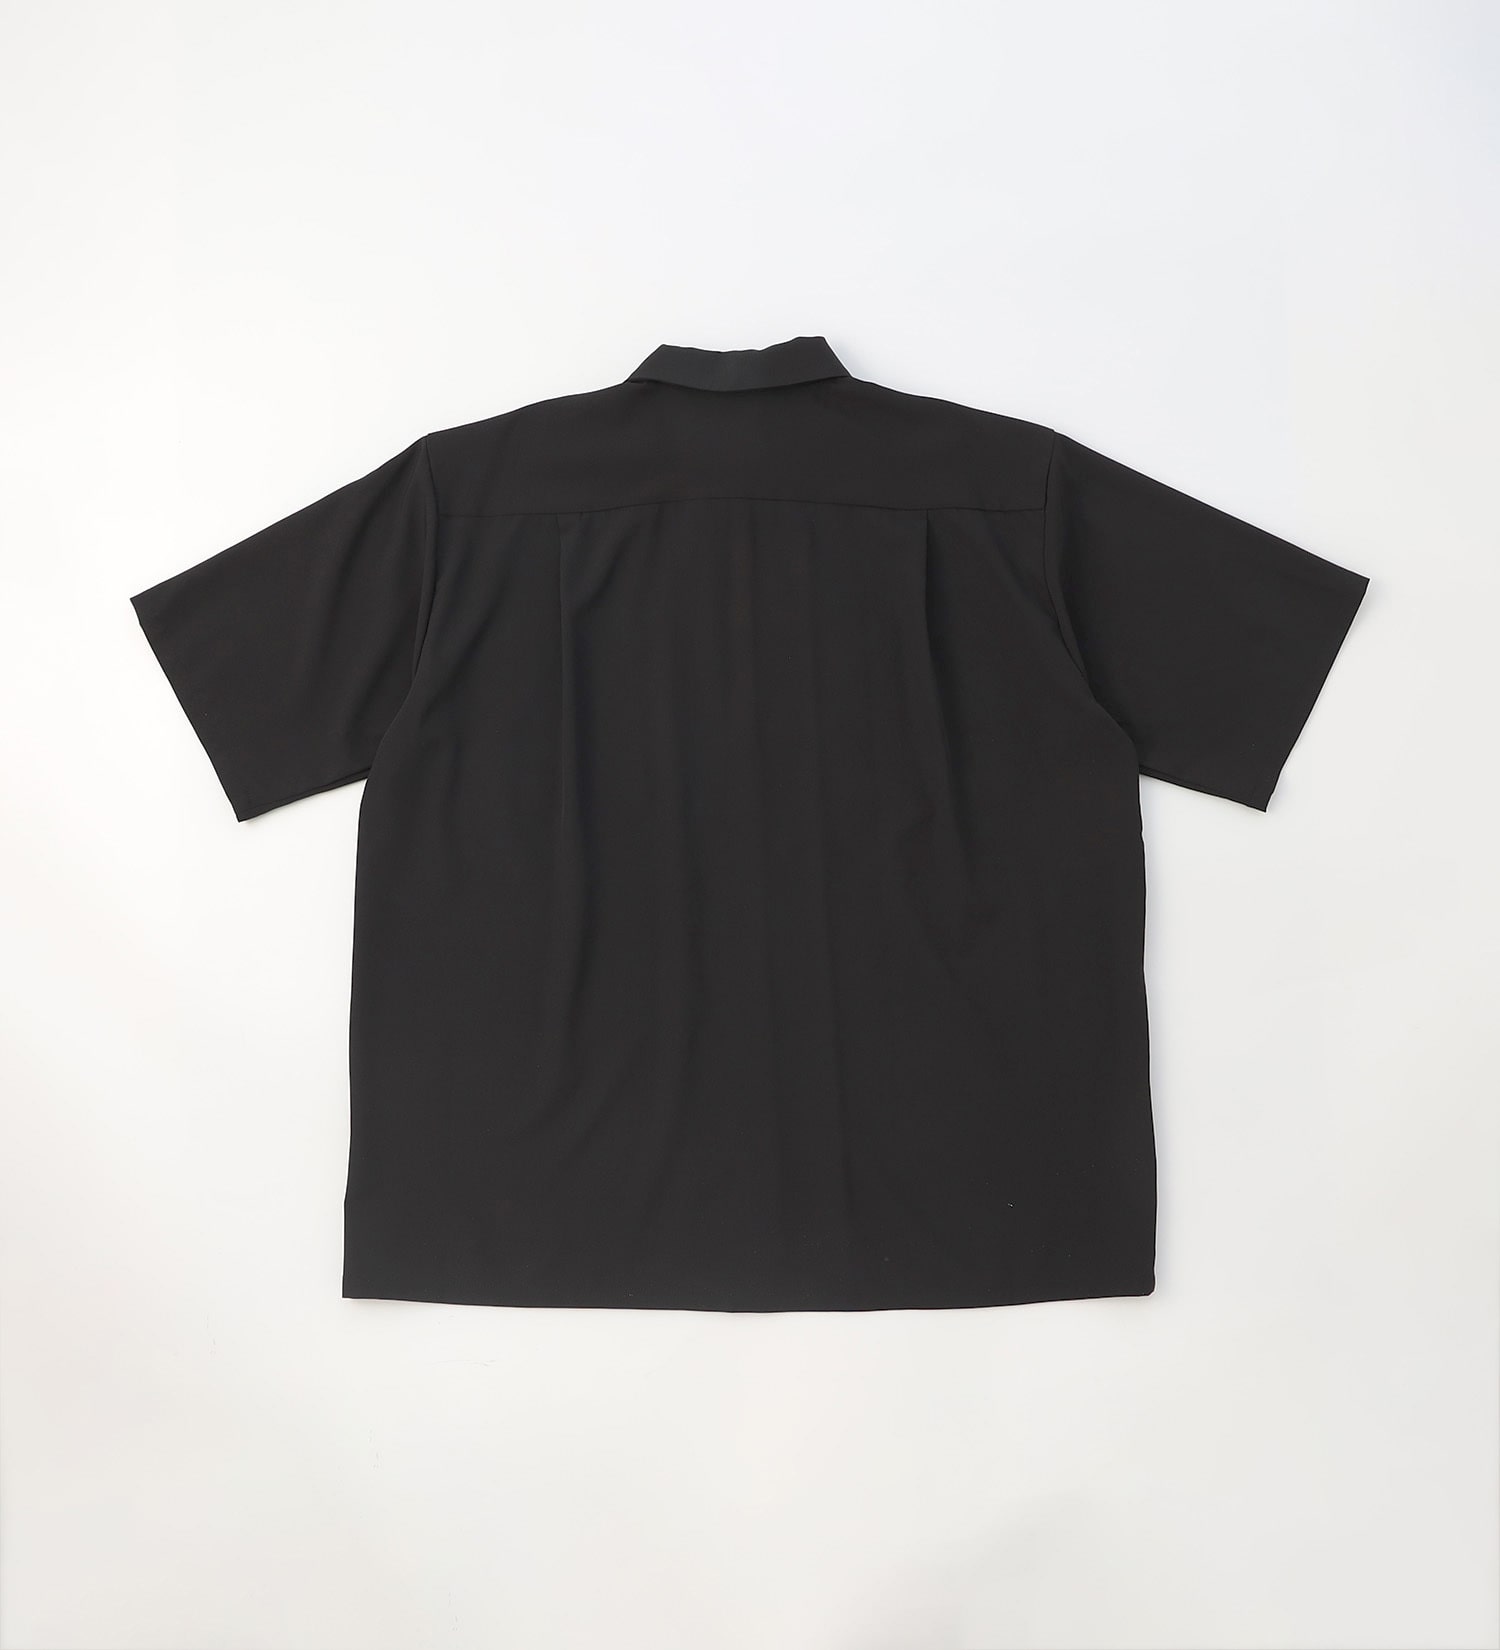 EDWIN(エドウイン)の【BLACKFRIDAY】ビッグフィットシャツ 半袖【アウトレット店舗・WEB限定】|トップス/シャツ/ブラウス/メンズ|ブラック